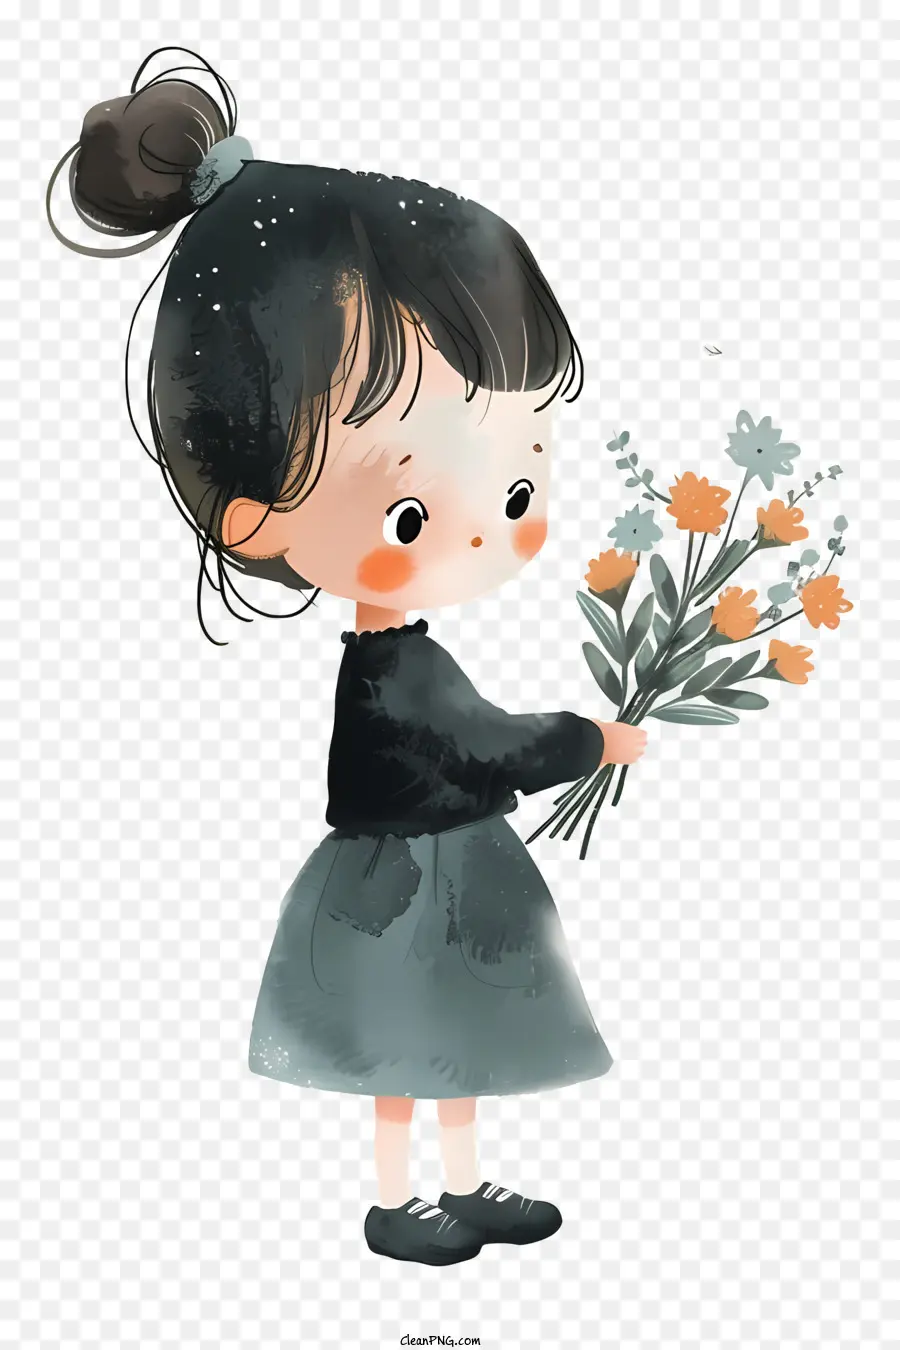 Mädchen hält Blumen süße Mädchen Blumen braune Haare schwarzes Kleid - Süßes Mädchen mit Blumen in skurriler Zeichnung